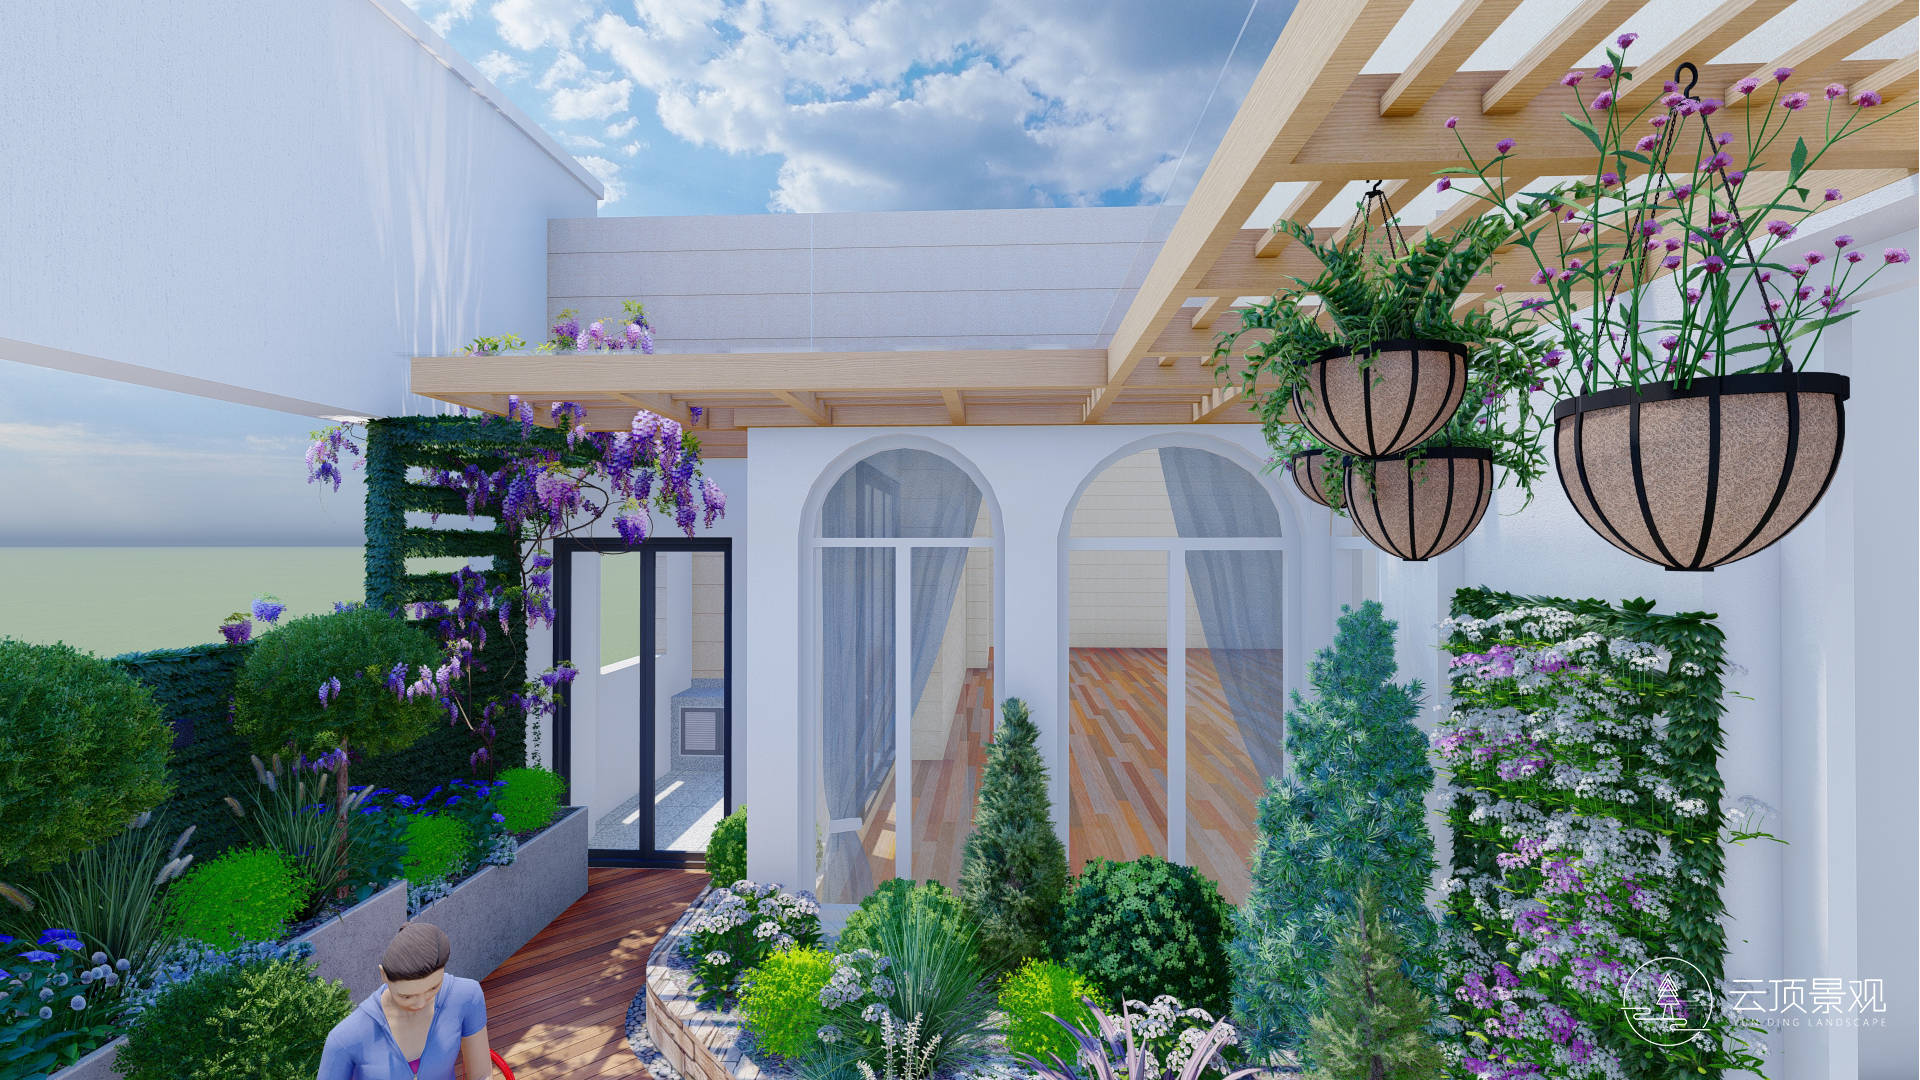 本项目为顶楼大平层露台花园,客户想打造一个绿意包围的空中花园,可